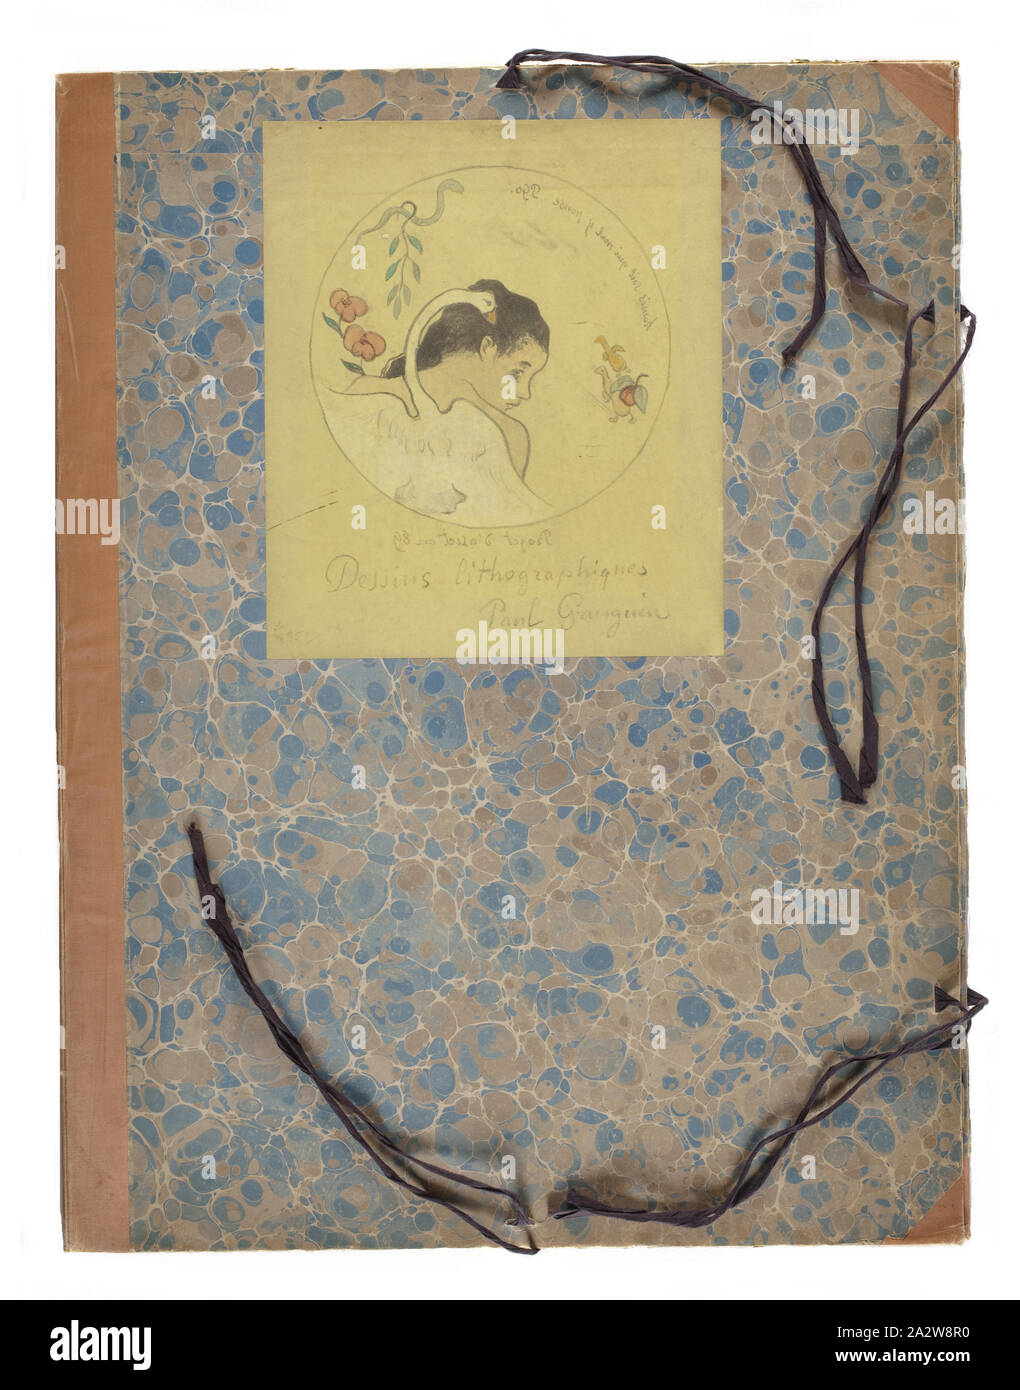 Design für eine Platte - Leda, Paul Gauguin (Französisch, 1848-1903), Edward Ancourt, Drucker (Französisch), 1889, Zincograph mit Aquarell und Gouache auf kanariengelb webte Papier, auf Karton Ordner montiert, 26-3/8 x 20 x 1/2 in. (Portfolio) 11-15/16 x 10-3/16 in. (Bild), eingeschrieben und in schwarzer Tinte unten Bild unterzeichnet: Dessins lithographiques/Paul Gauguin, eingeschrieben und auf die Platte unterzeichnet, in umgekehrter, UR: homis [sic] soit qui mal y pense PGo., eingeschrieben und auf die Platte außerhalb des Kreises datiert, in umgekehrter, LC: Projet d'asiet [sic] en 89, Serie, Dessins lithographiques (Die volpini Suite Stockfoto